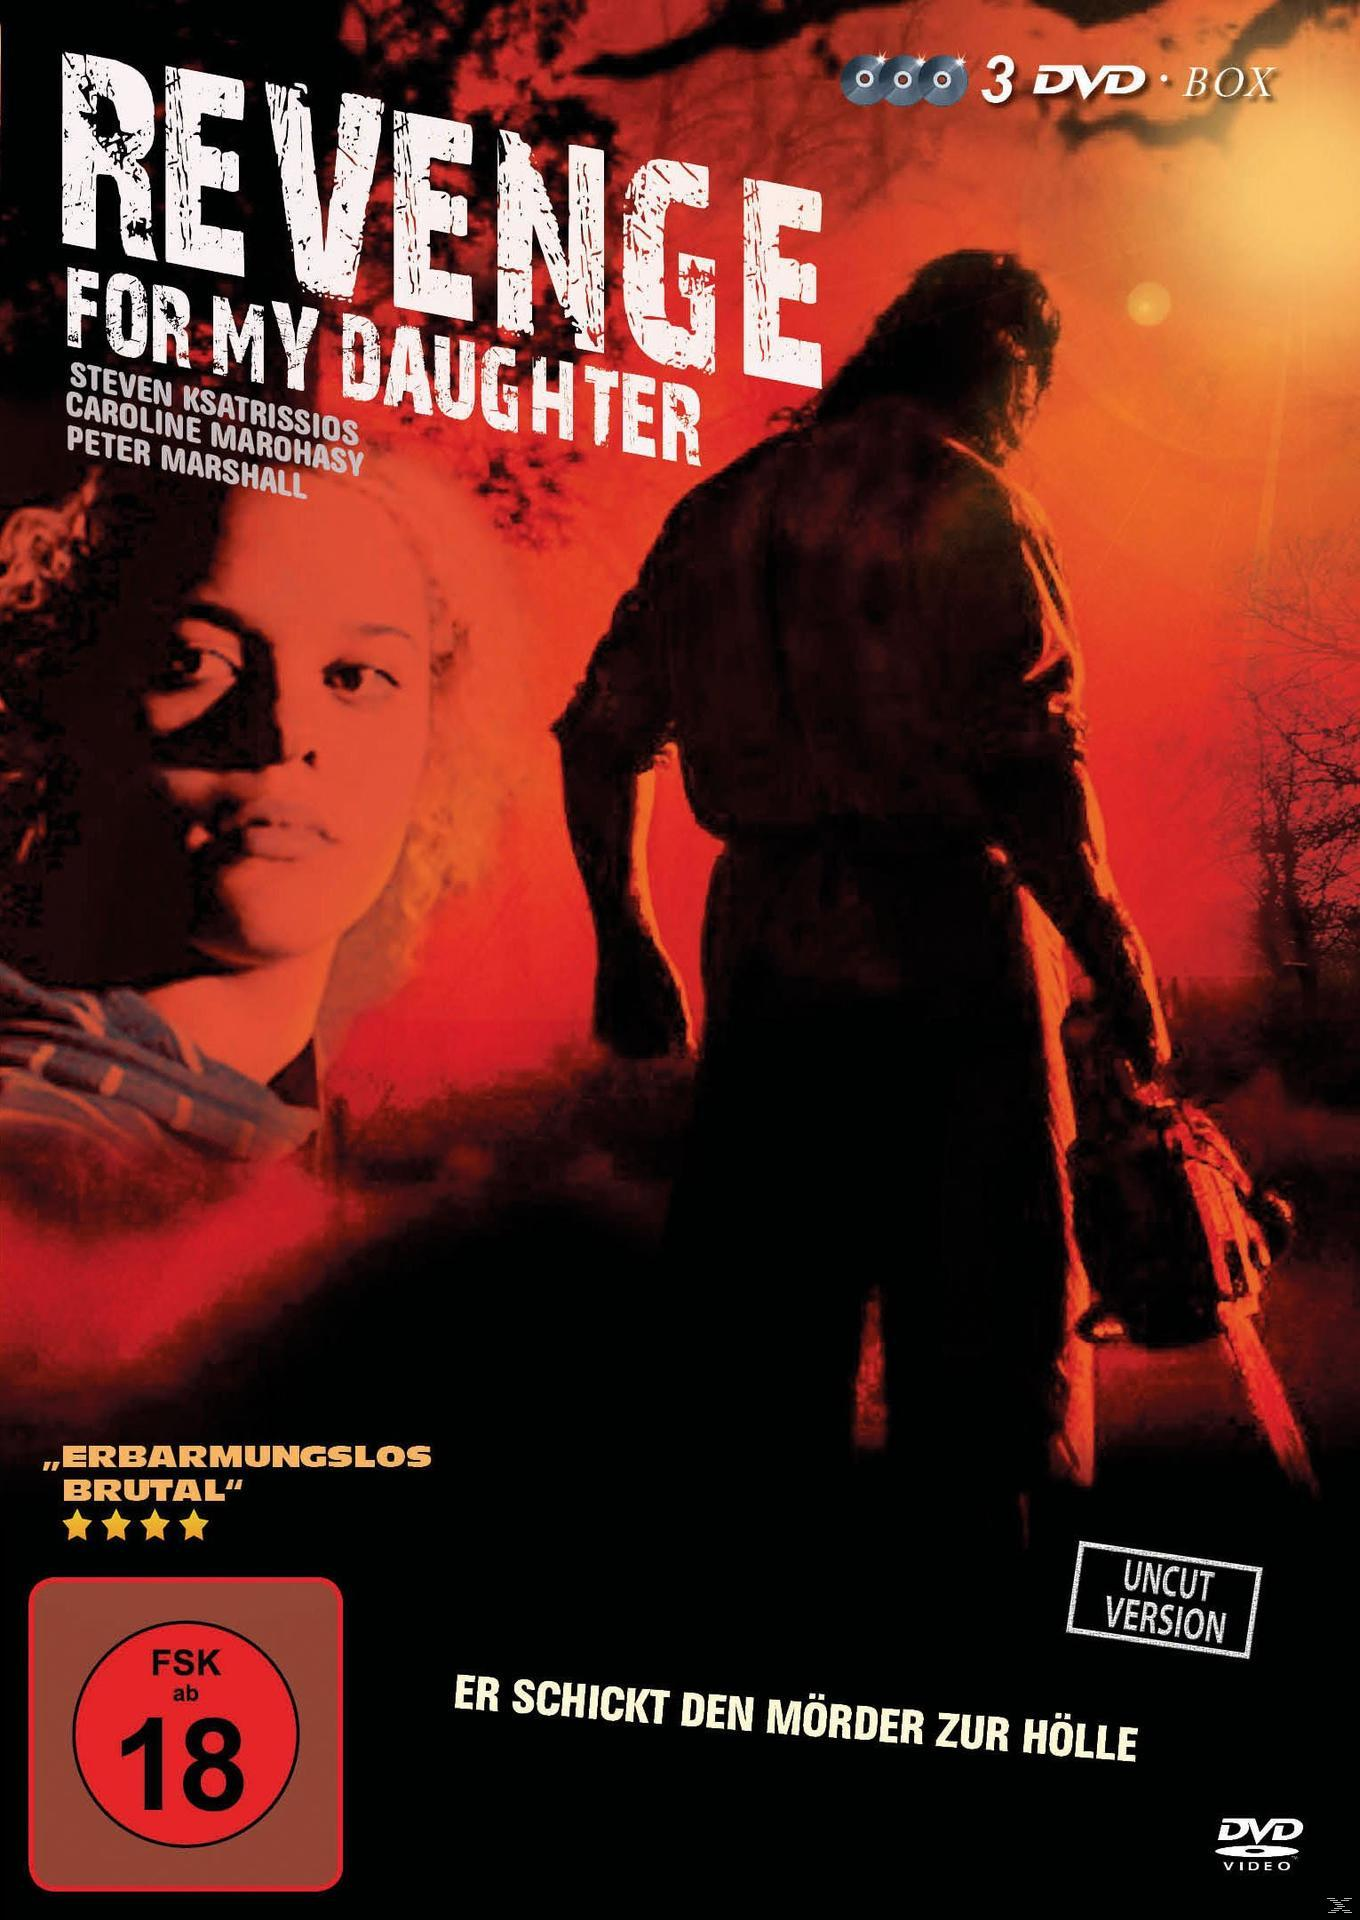 DVD for my Revenge Daughter